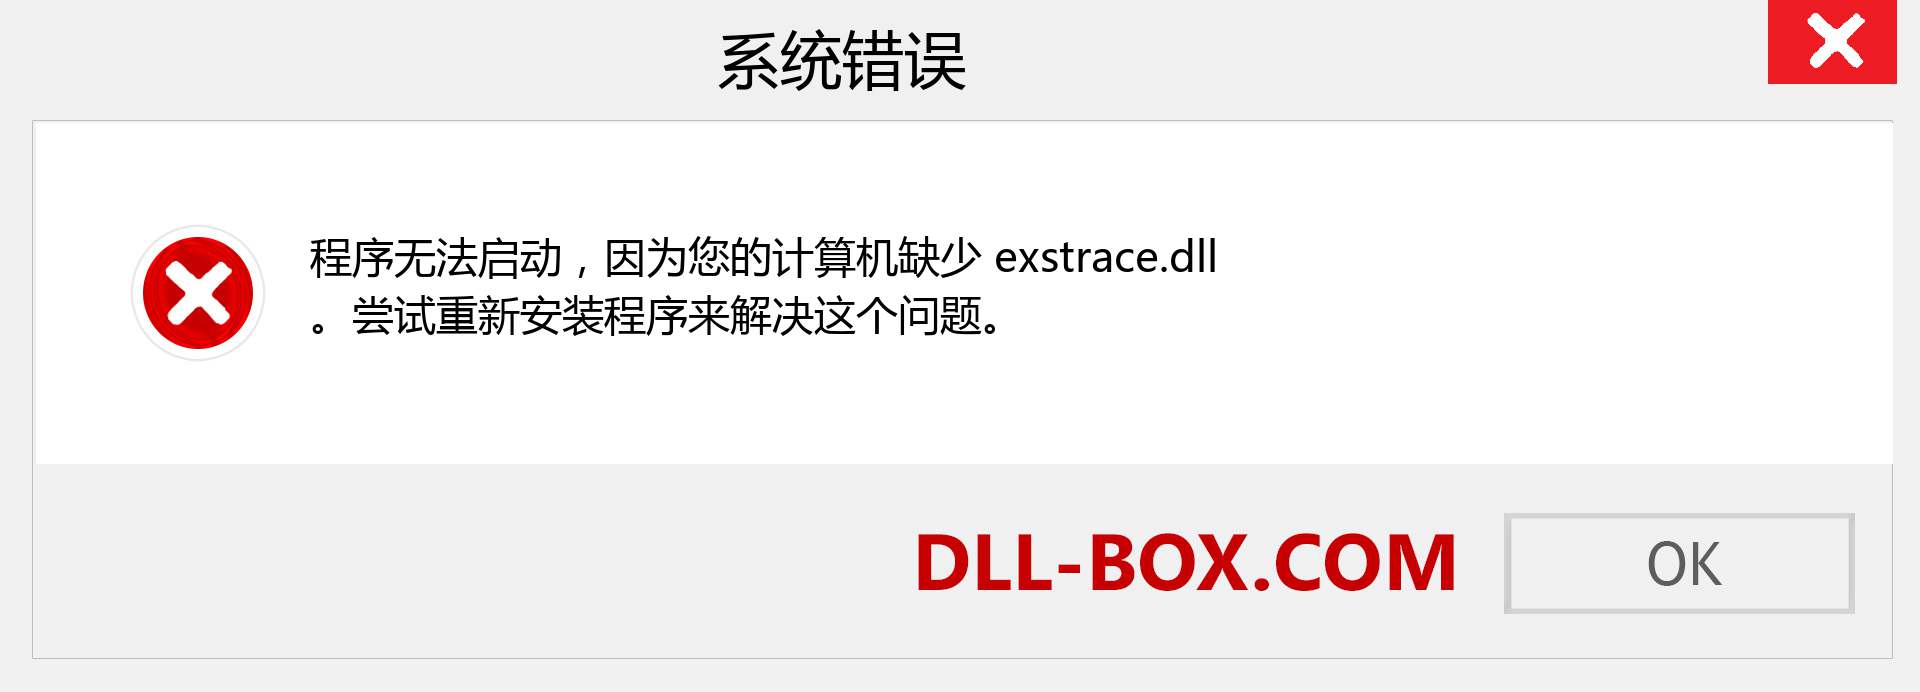 exstrace.dll 文件丢失？。 适用于 Windows 7、8、10 的下载 - 修复 Windows、照片、图像上的 exstrace dll 丢失错误